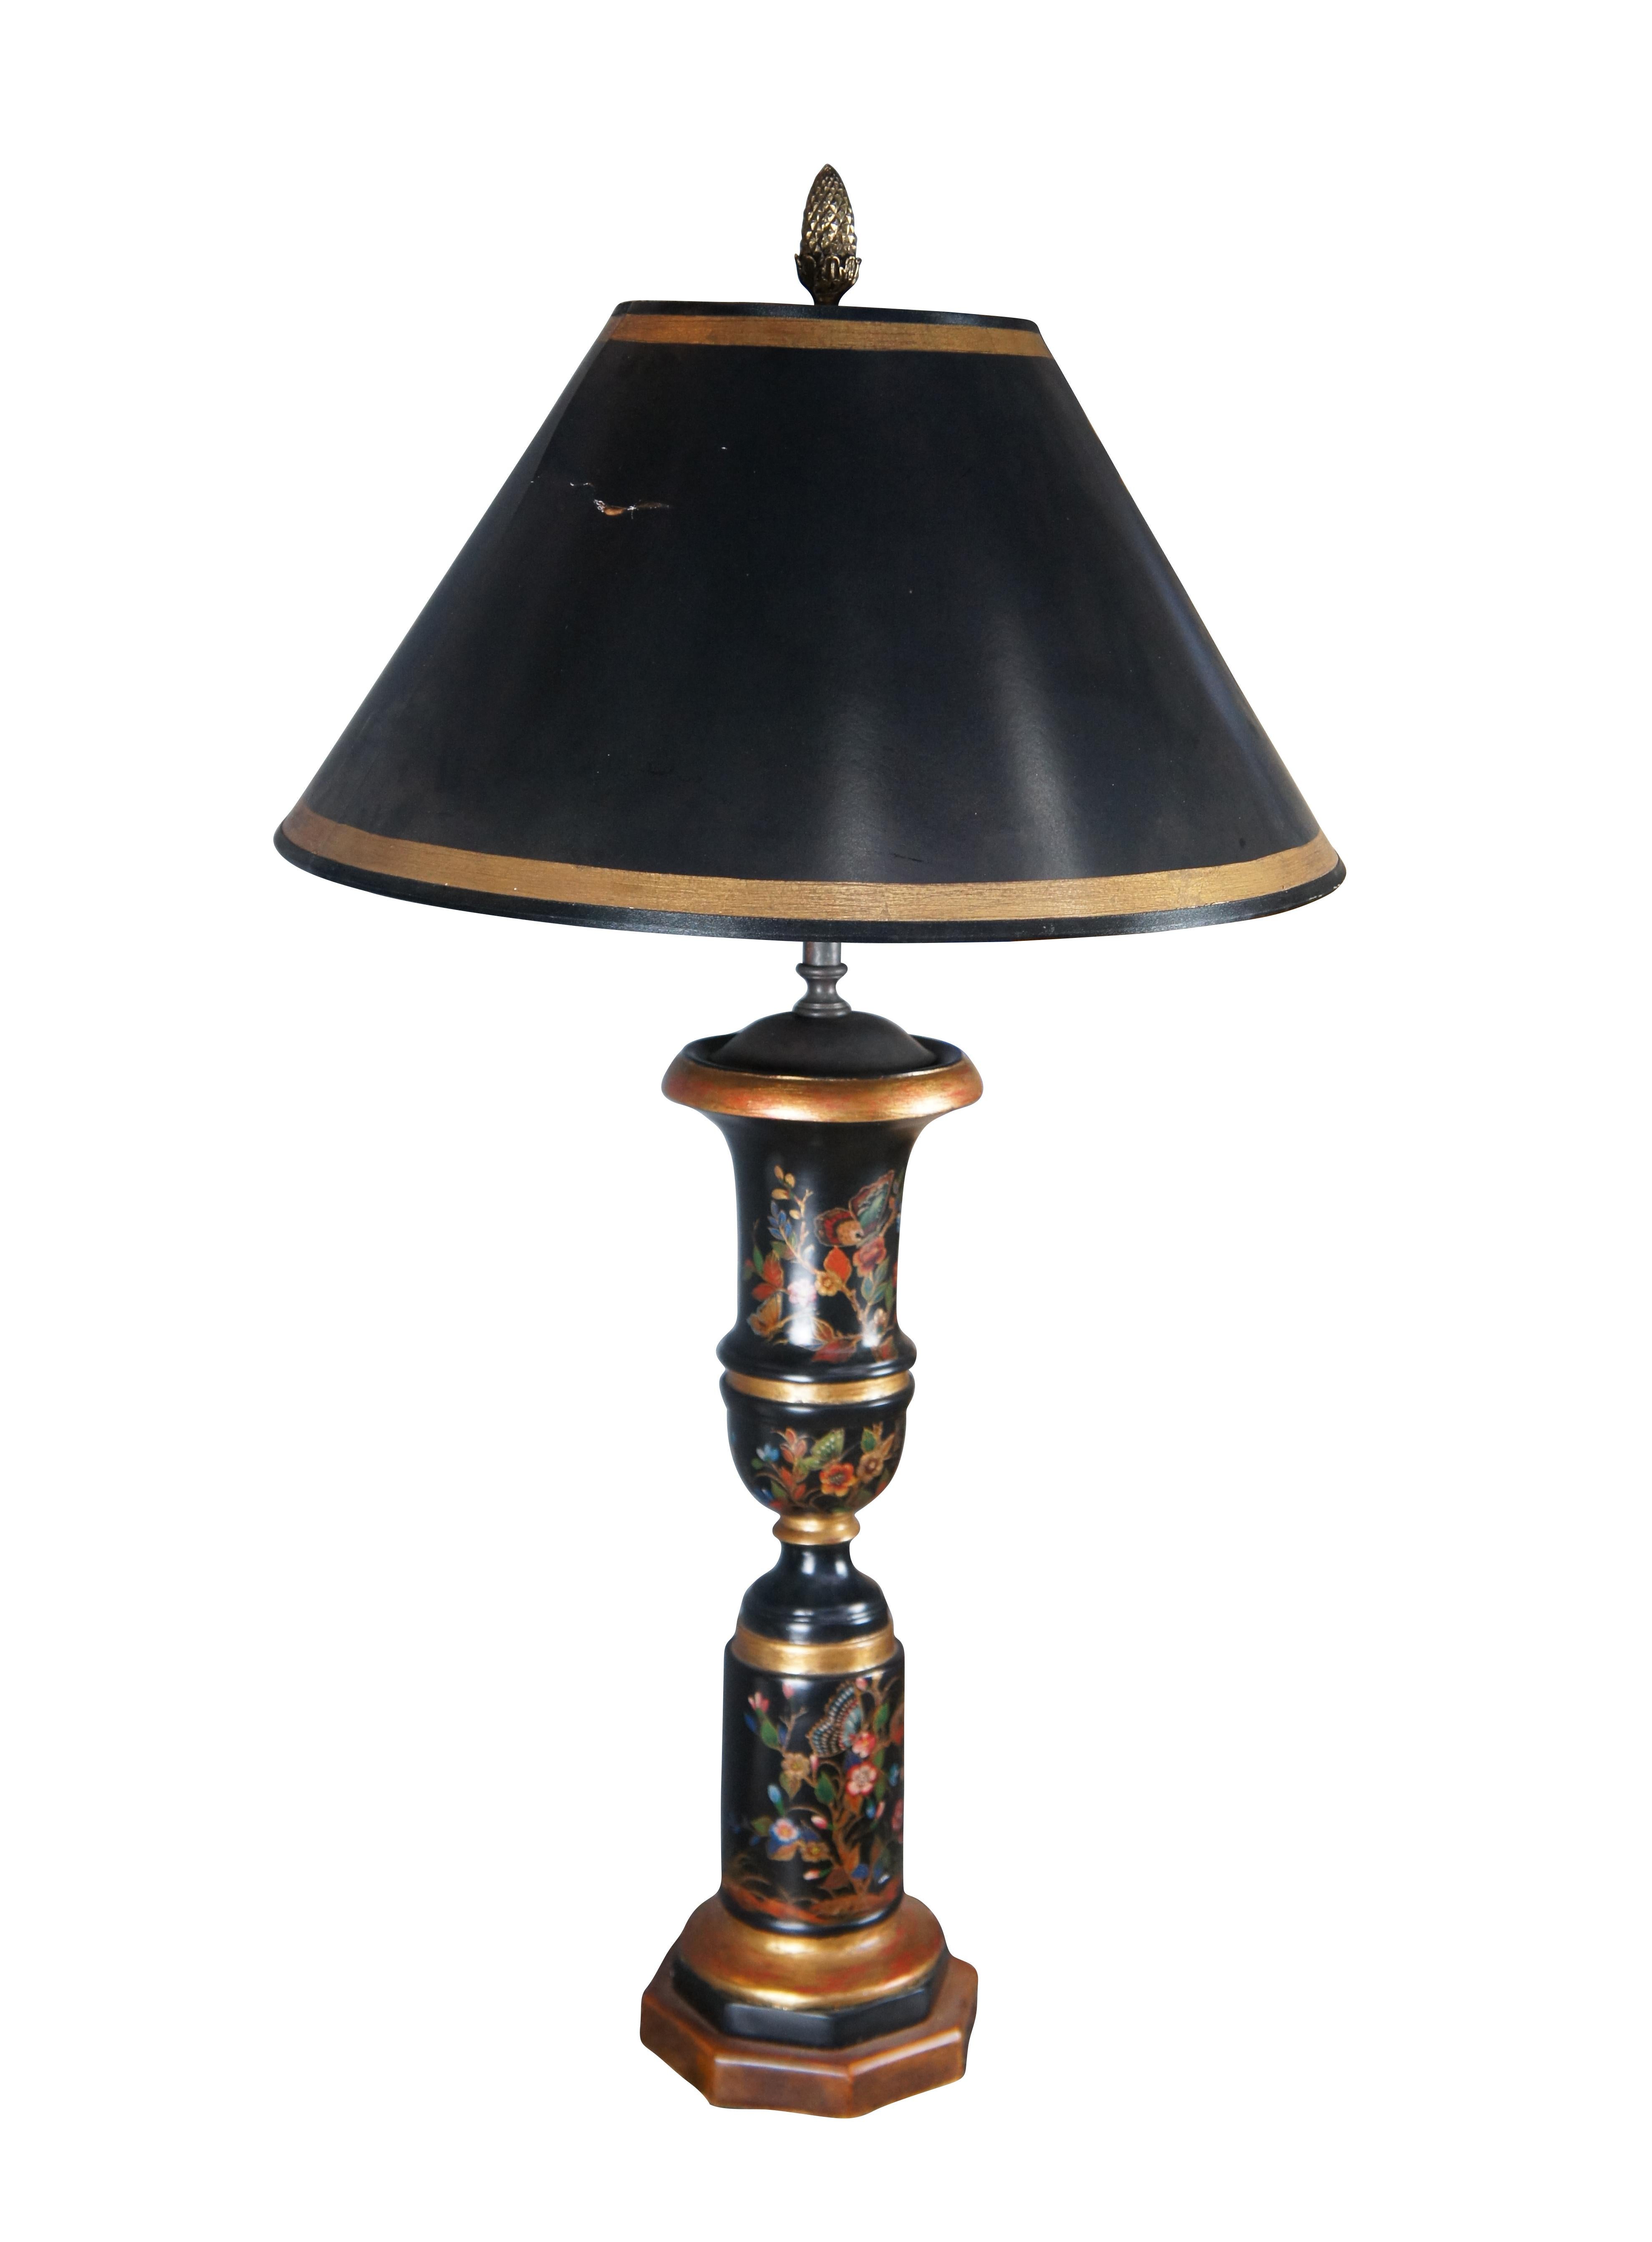 Magnifique lampe de table de style Tole de Theodore Alexander. Elle présente une forme d'urne en forme de trompette ou de trophée avec une colonne en bois noir peinte à la main et décorée de fleurs et de papillons colorés. La lampe est rehaussée